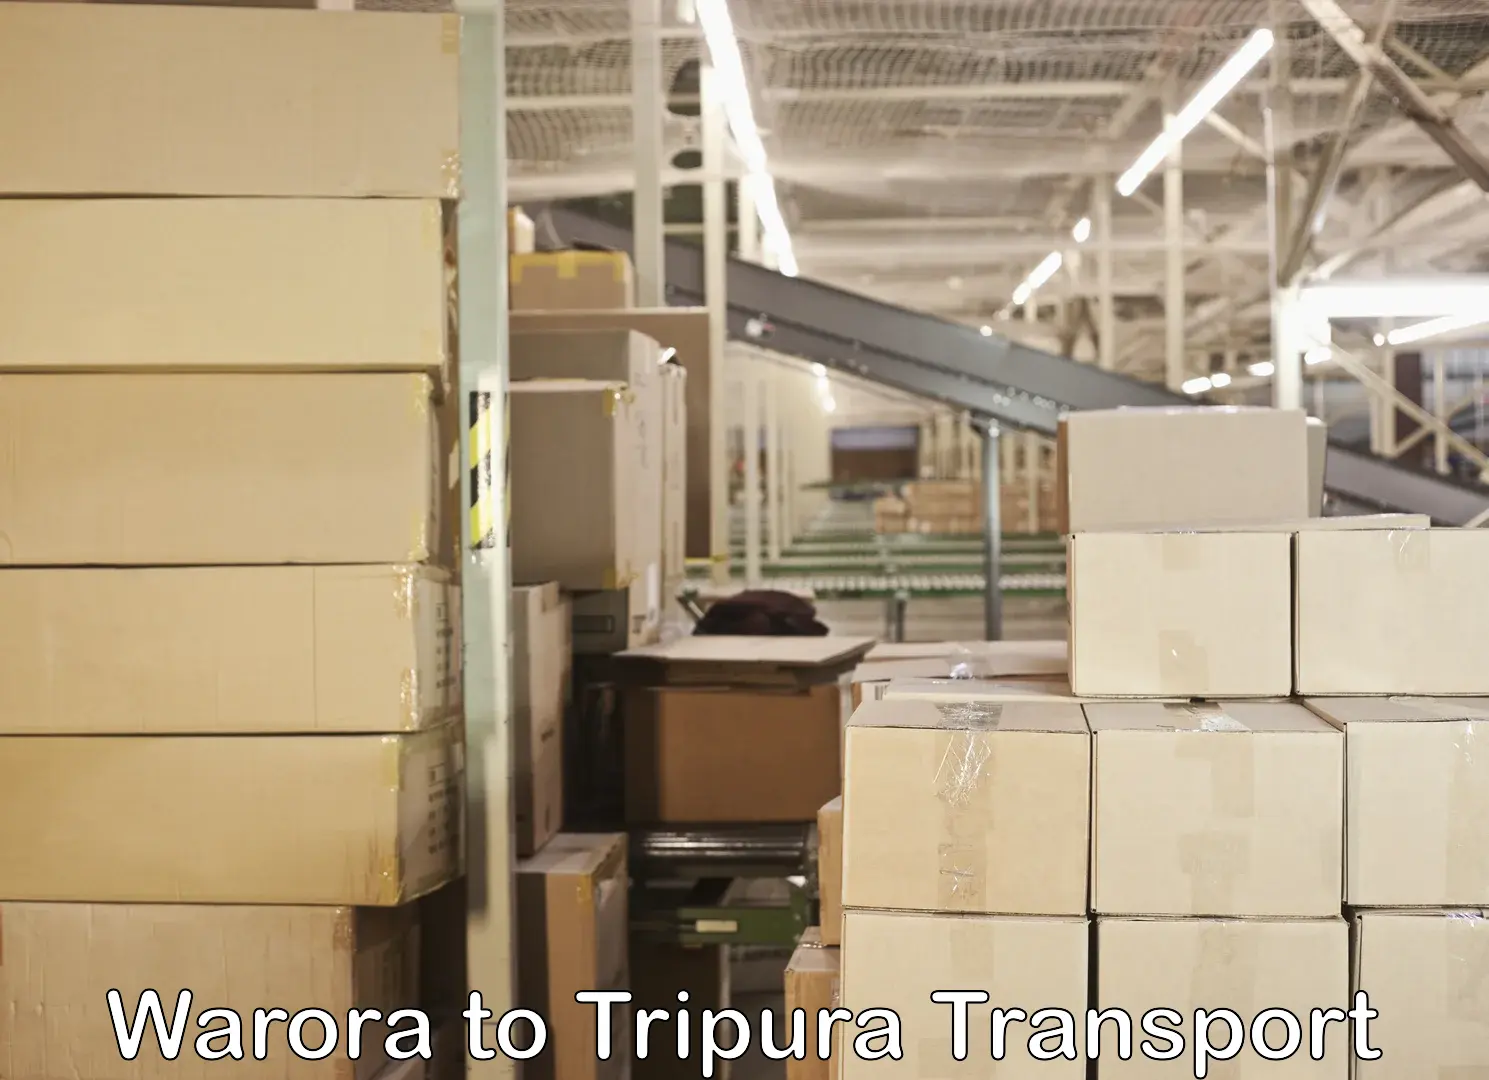 Online transport service Warora to Tripura